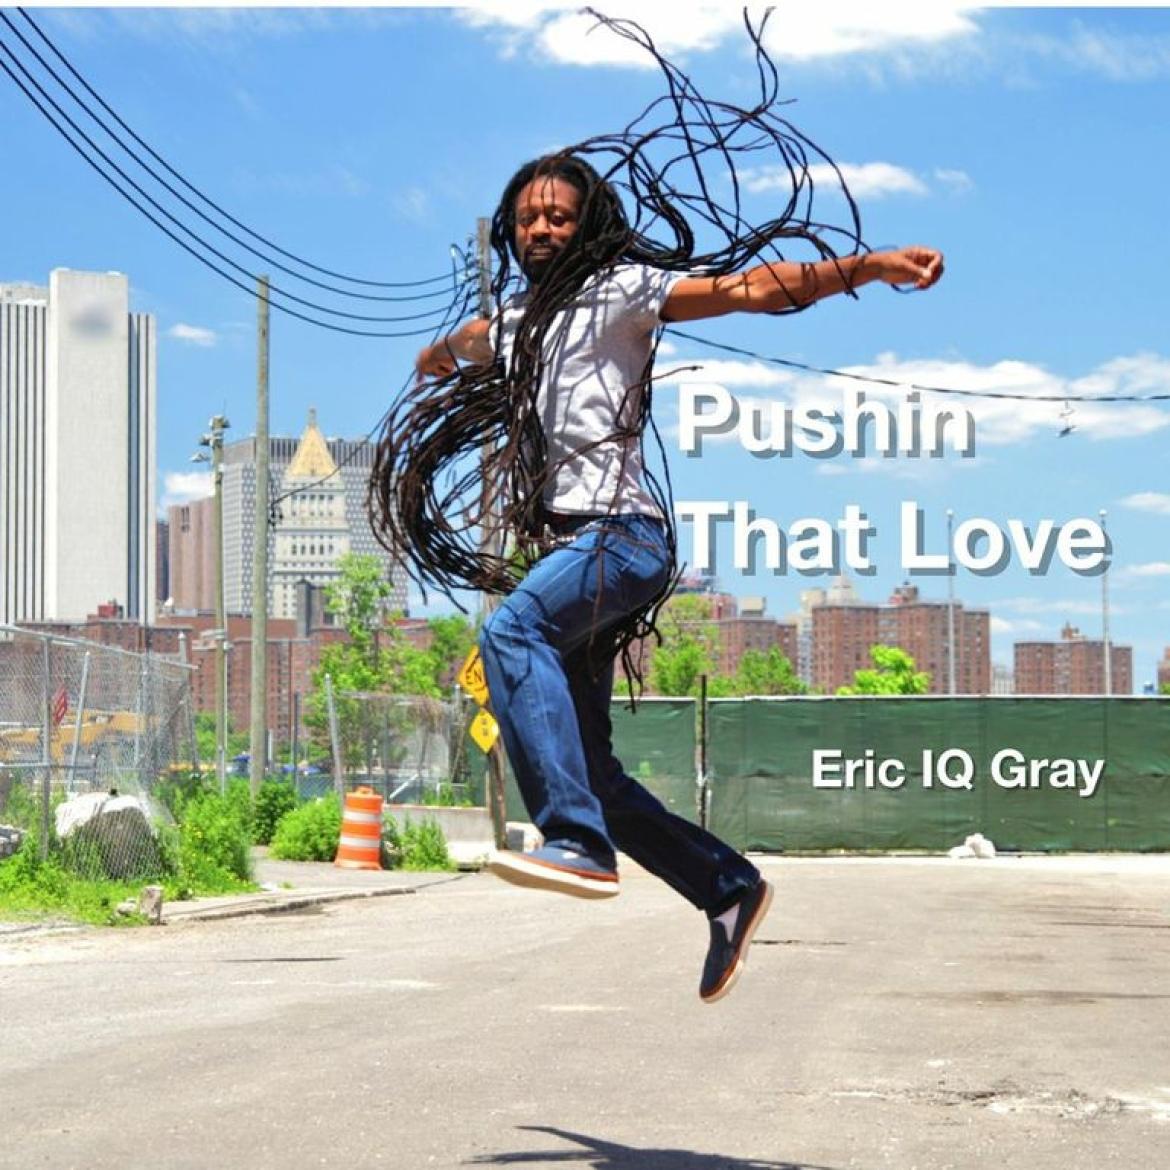 Pushin' That Love - Eric IQ Gray